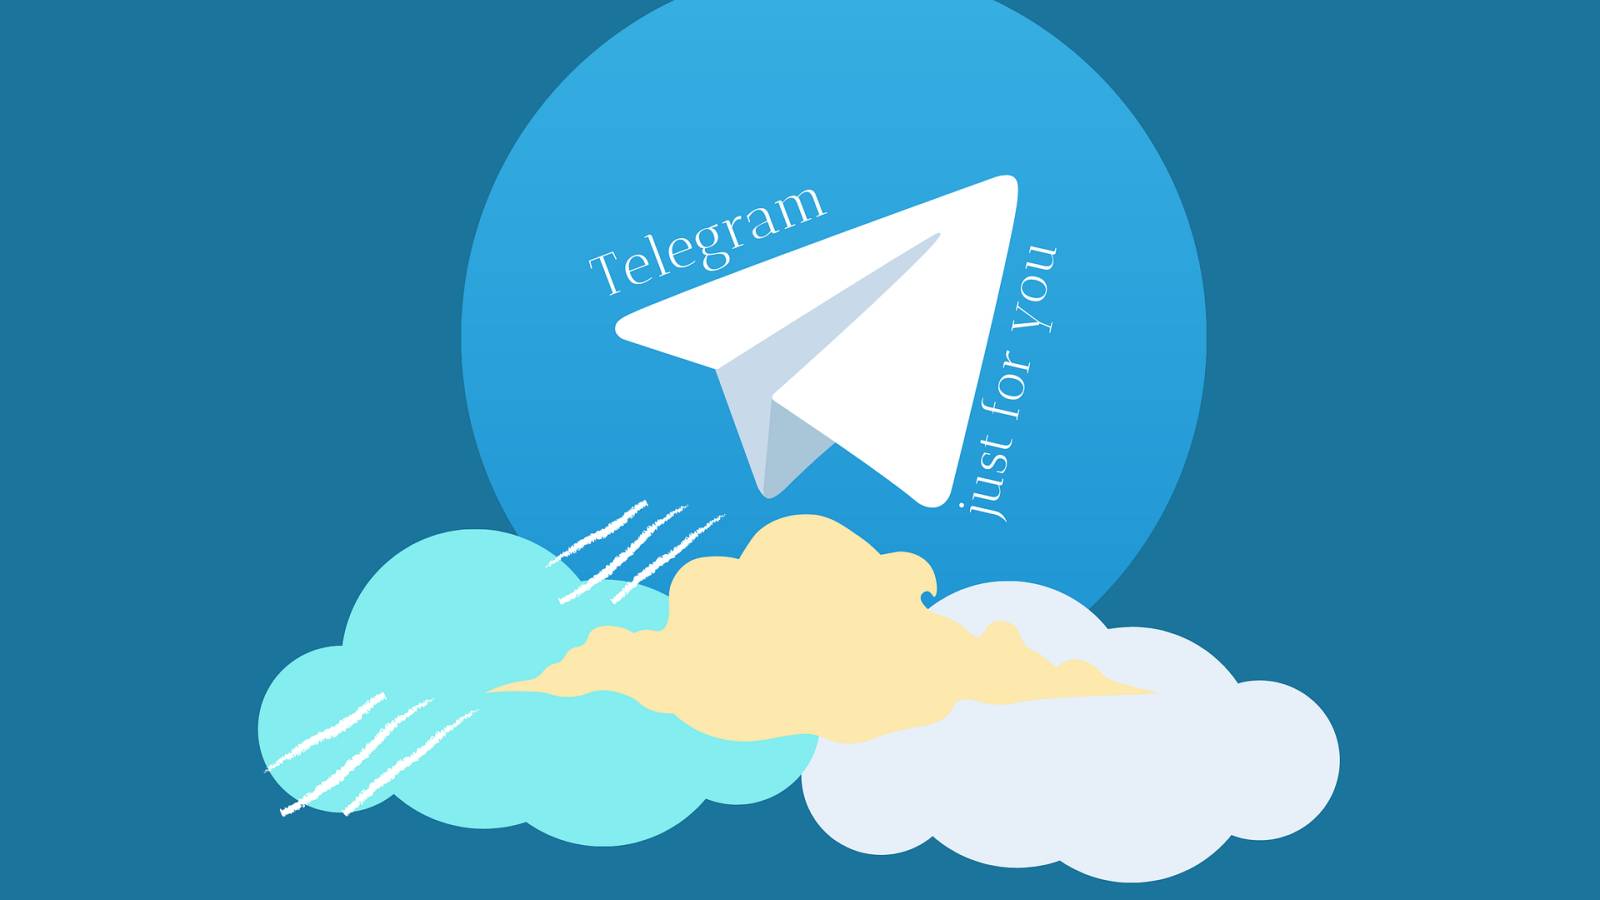 L'aggiornamento di Telegram è stato rilasciato con molte novità per l'applicazione